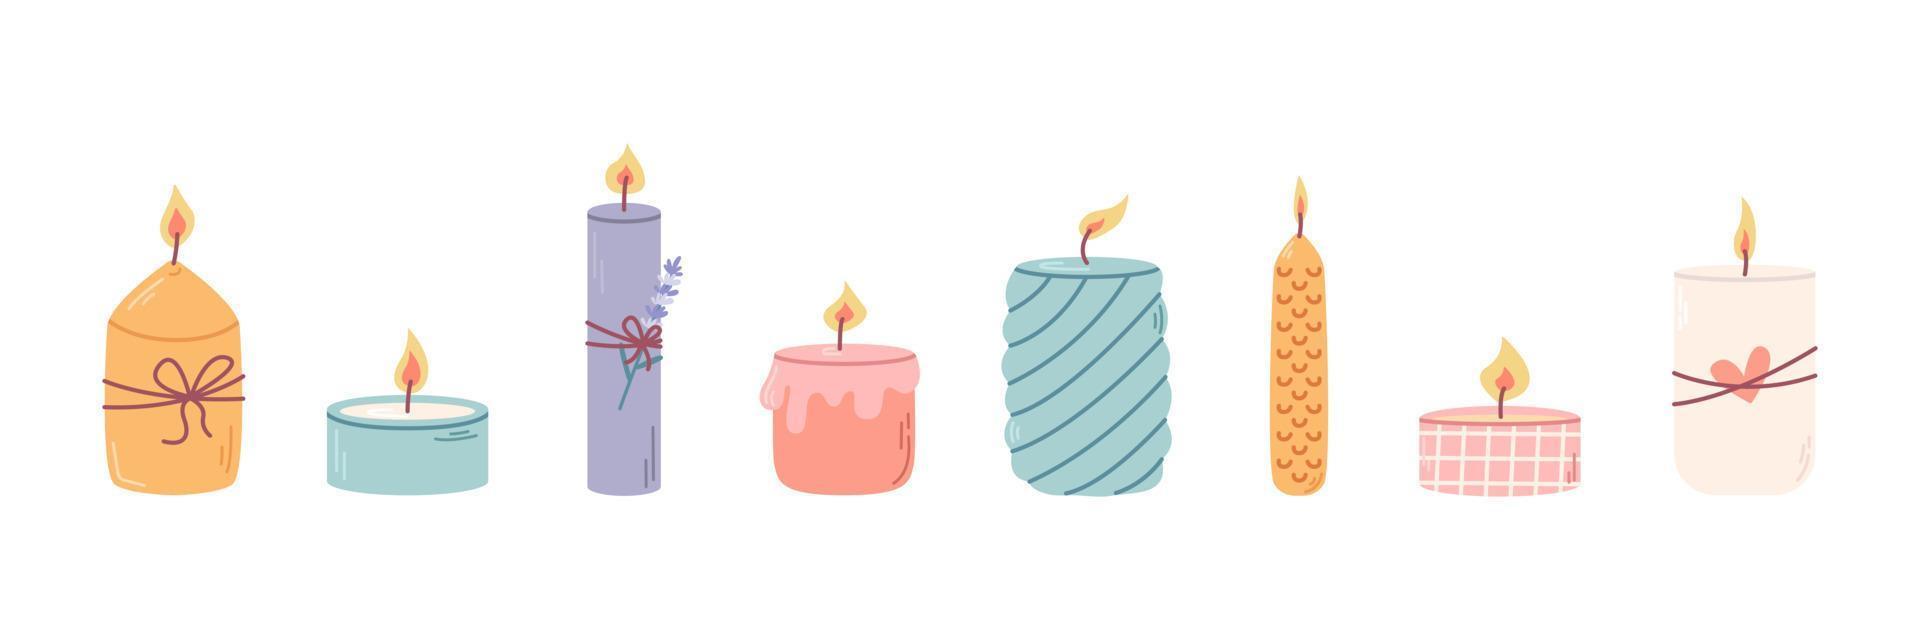 reeks van verschillend decoratief geparfumeerd kaarsen in kandelaars voor ontspanning en spa. vector vlak illustratie